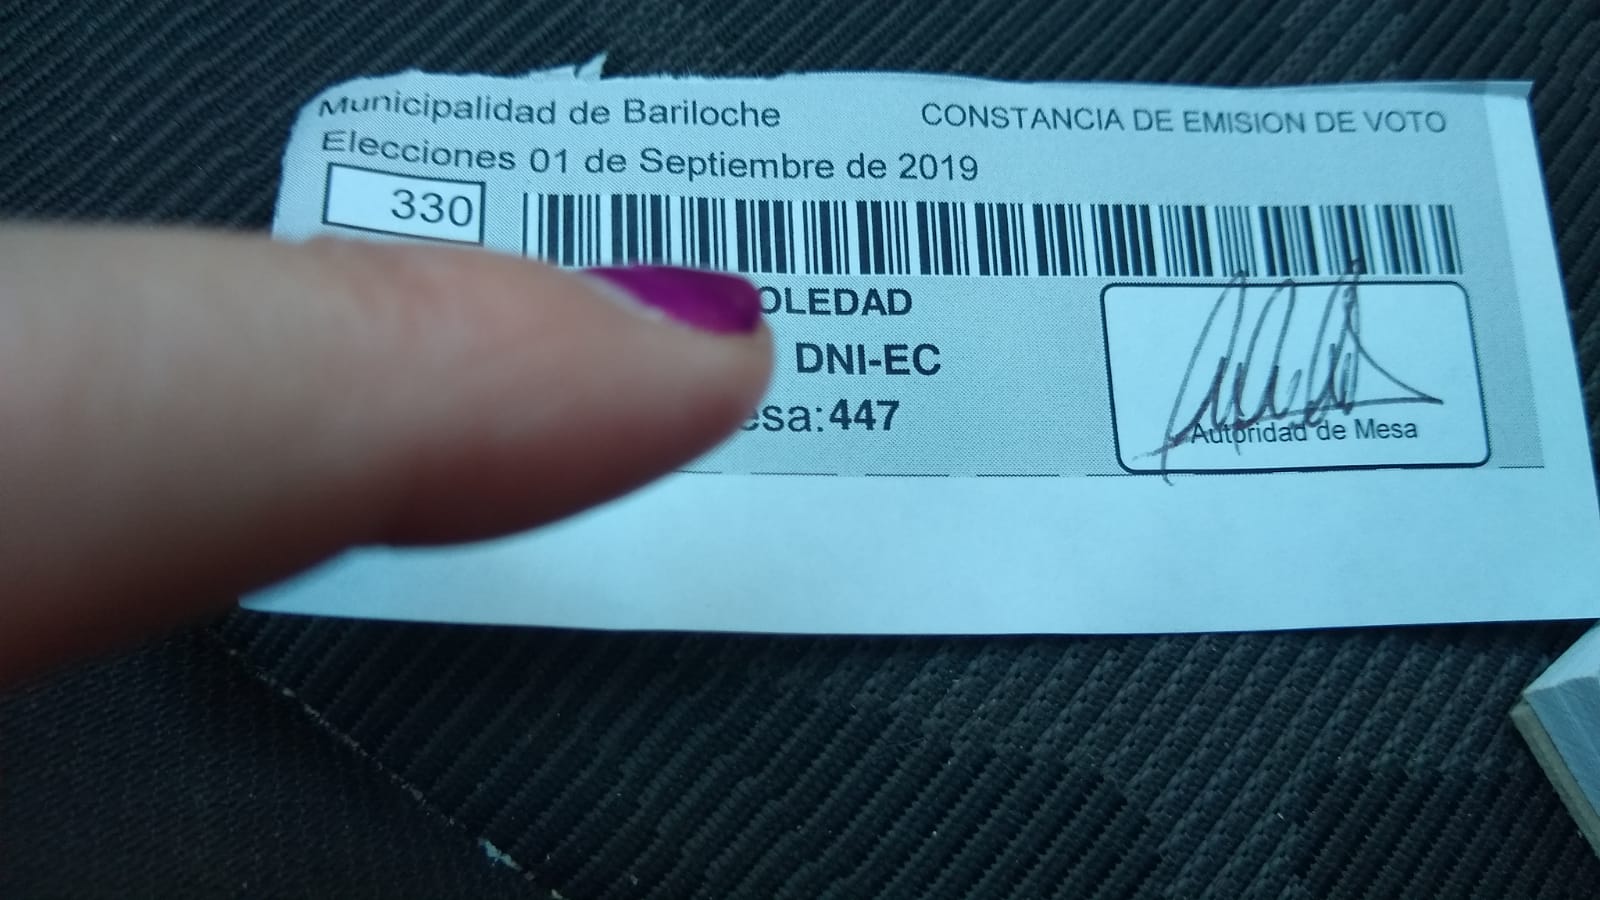 El error en el comprobante de votación en Bariloche  muestra la fecha del comicio de 2019. 